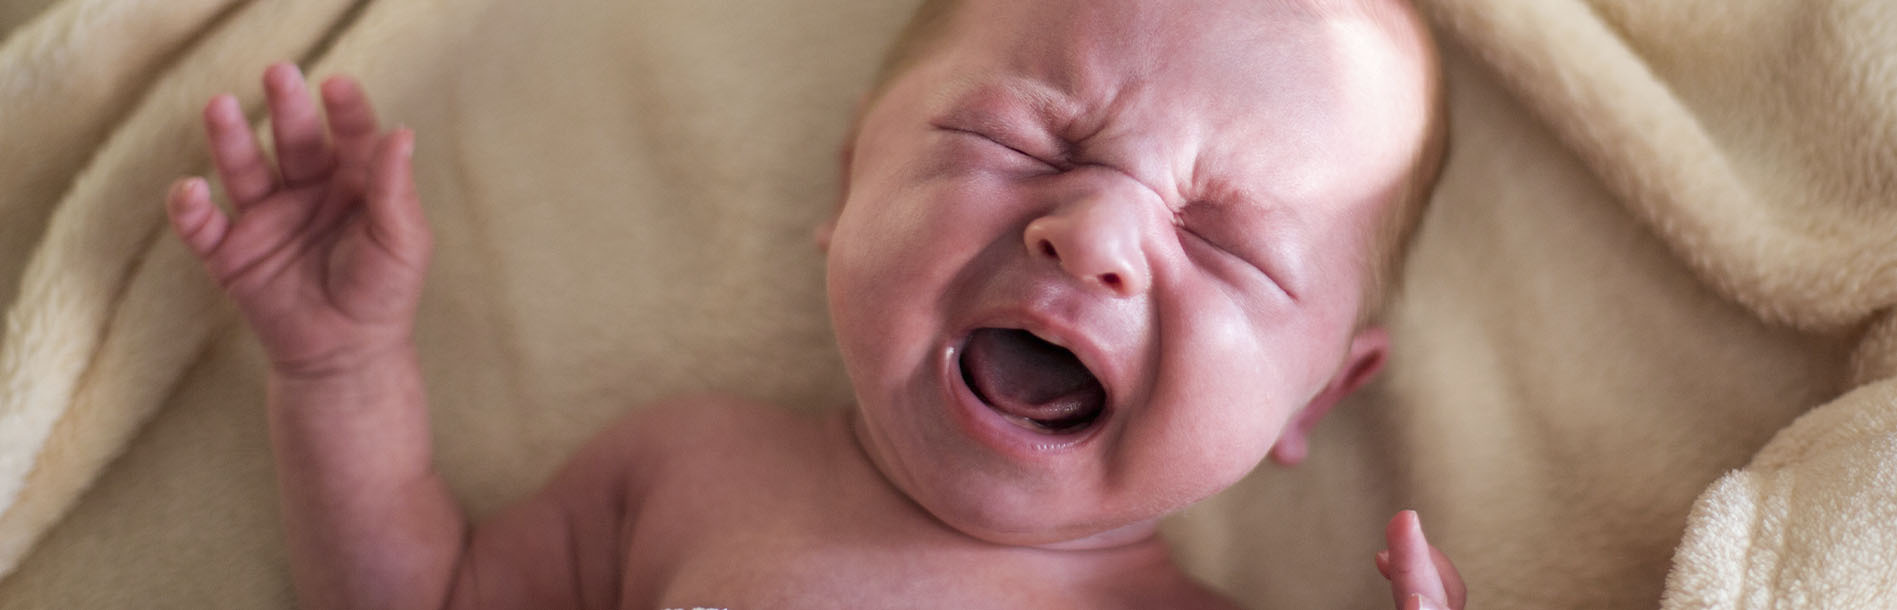 Choram muito, mas não têm lágrimas? Essa e outras 11 curiosidades sobre o seu bebê recém-nascido